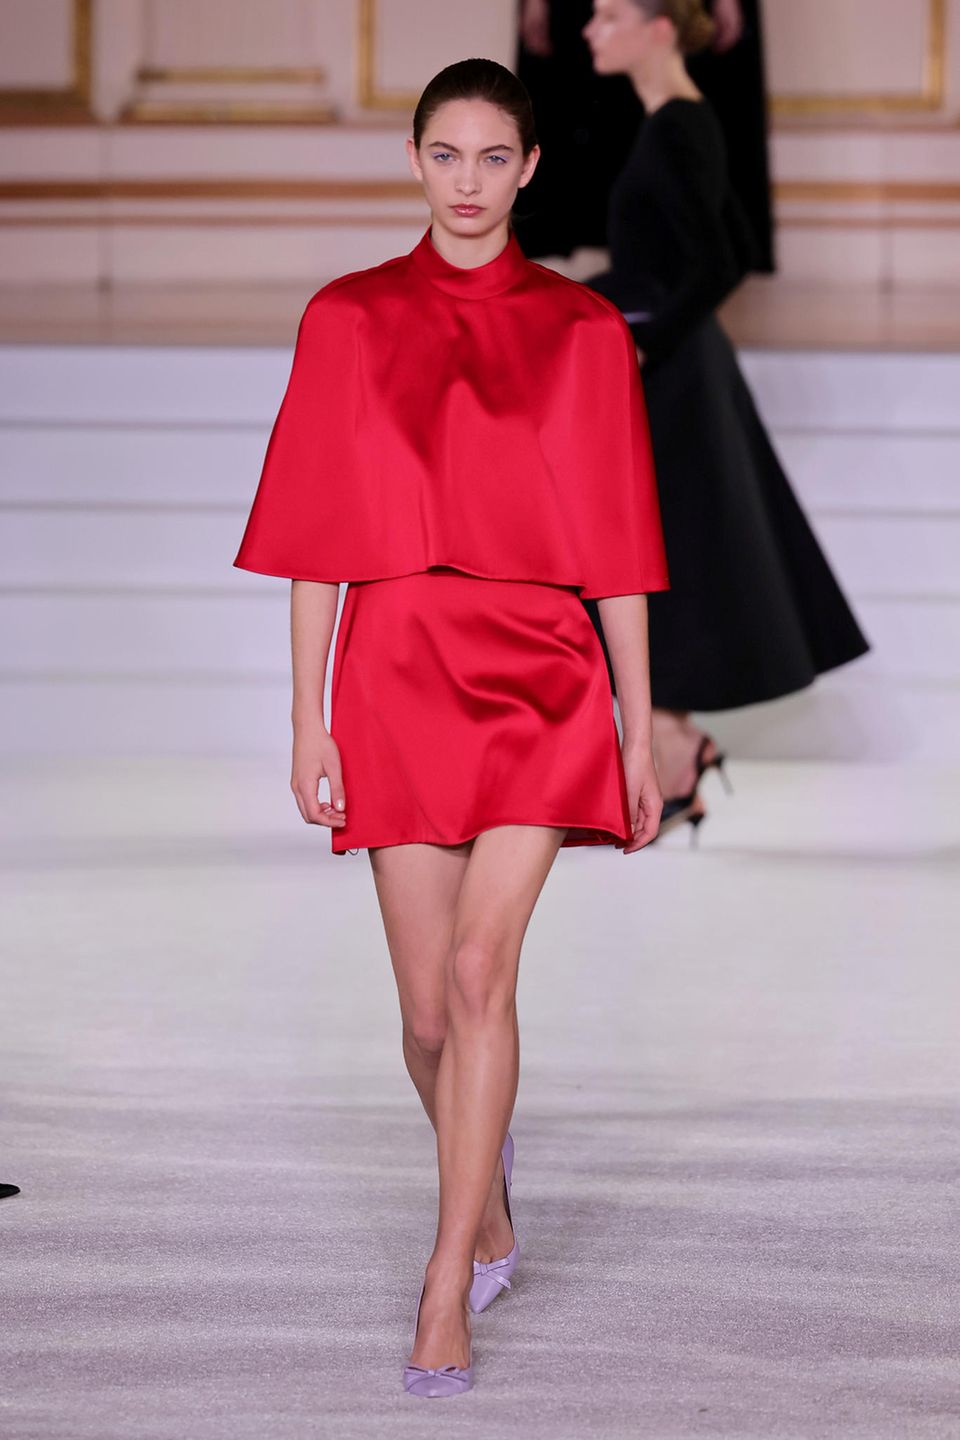 Carolina Herrera zeigt Seidenkleider in der Trendfarbe.